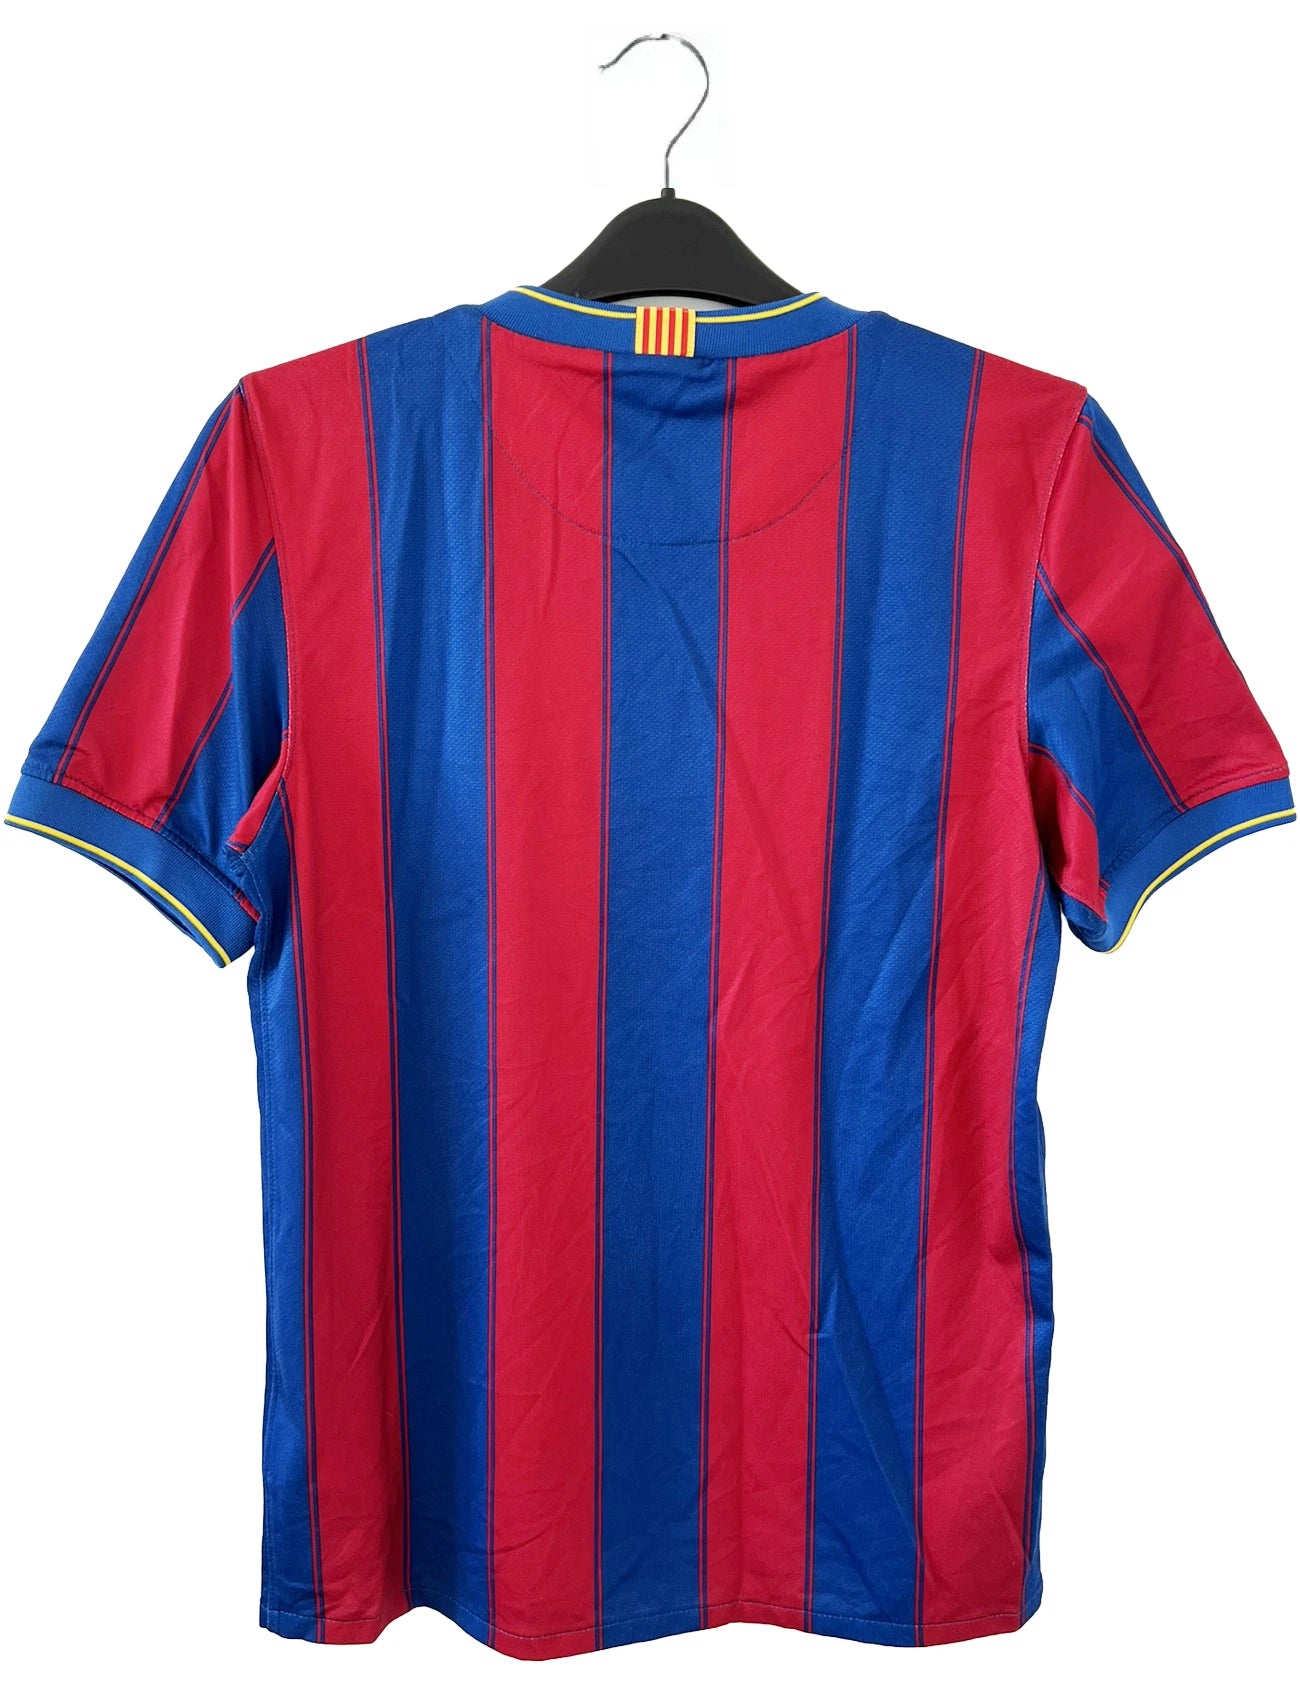 Maillot de foot vintage du FC Barcelone 2009-2010. Il s'agit du maillot domicile de couleur rouge et bleu. On peut retrouver l'équipementier nike et le sponsor unicef. Il s'agit d'un authentique comportant les numéros 343808-496.